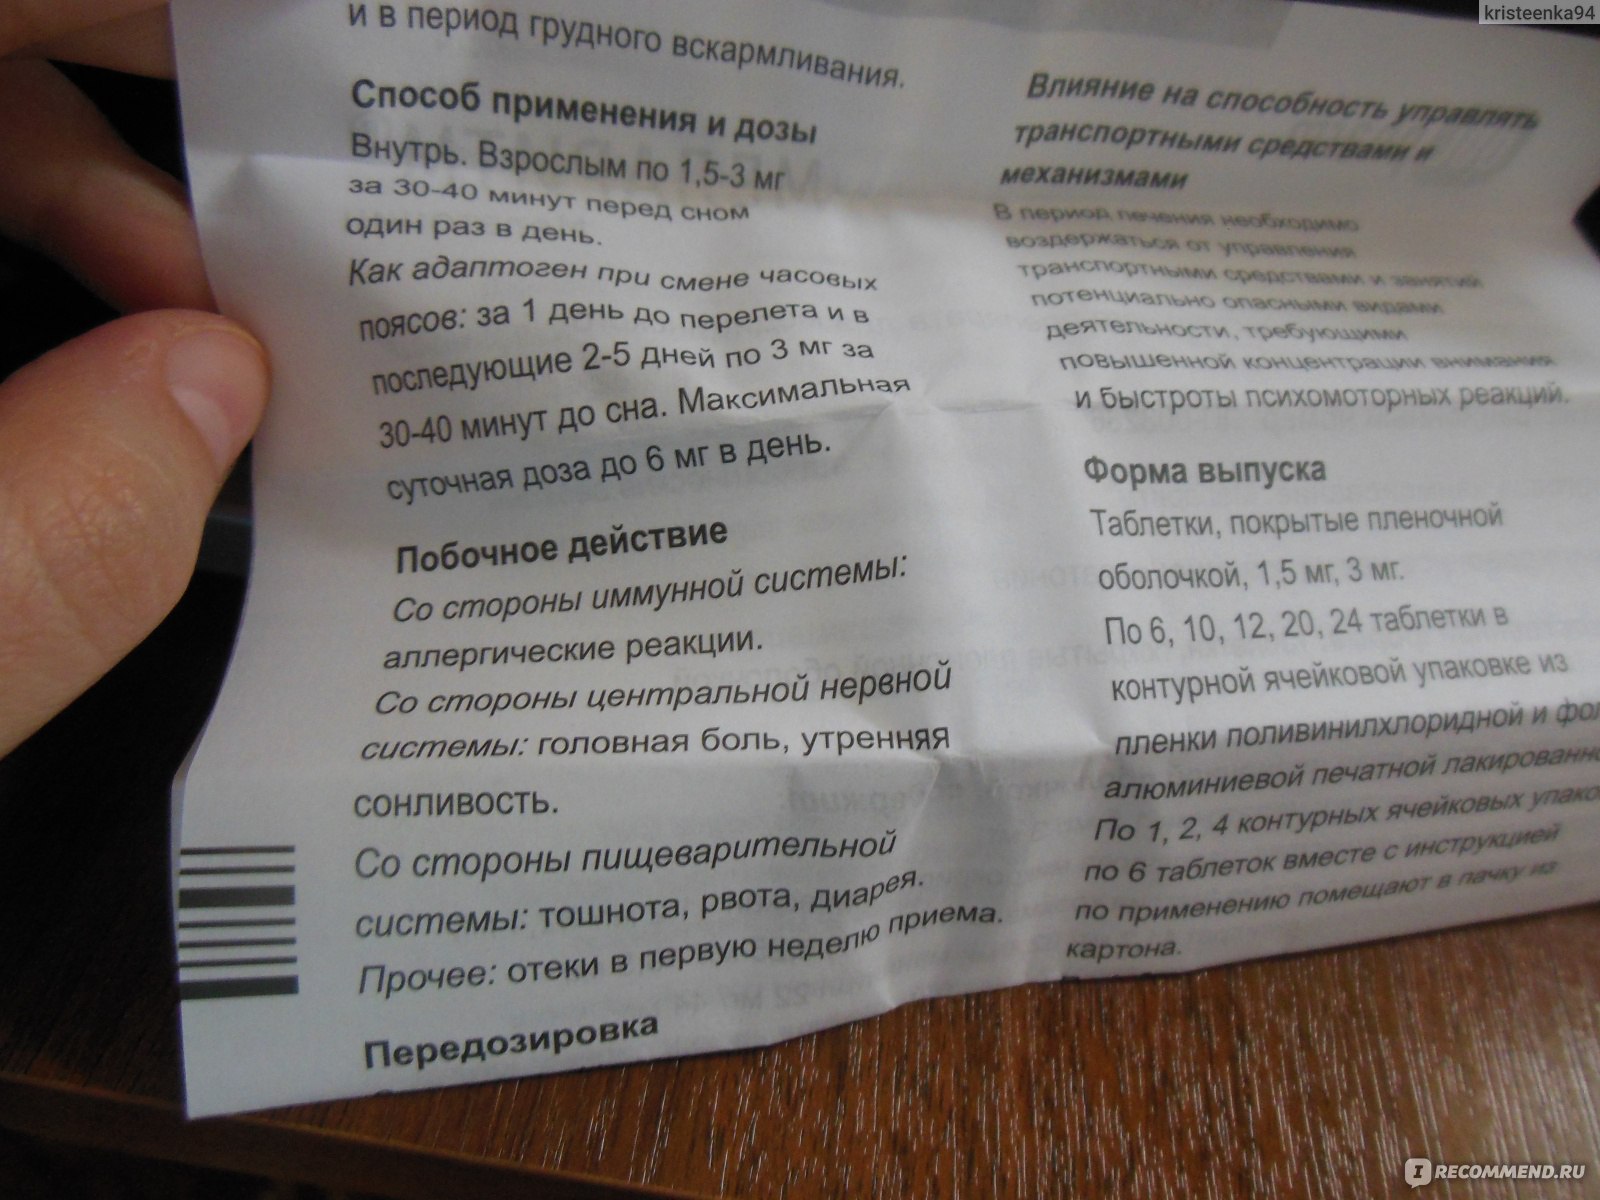 Меларена: инструкция по применению, аналоги и отзывы, цены в аптеках россии